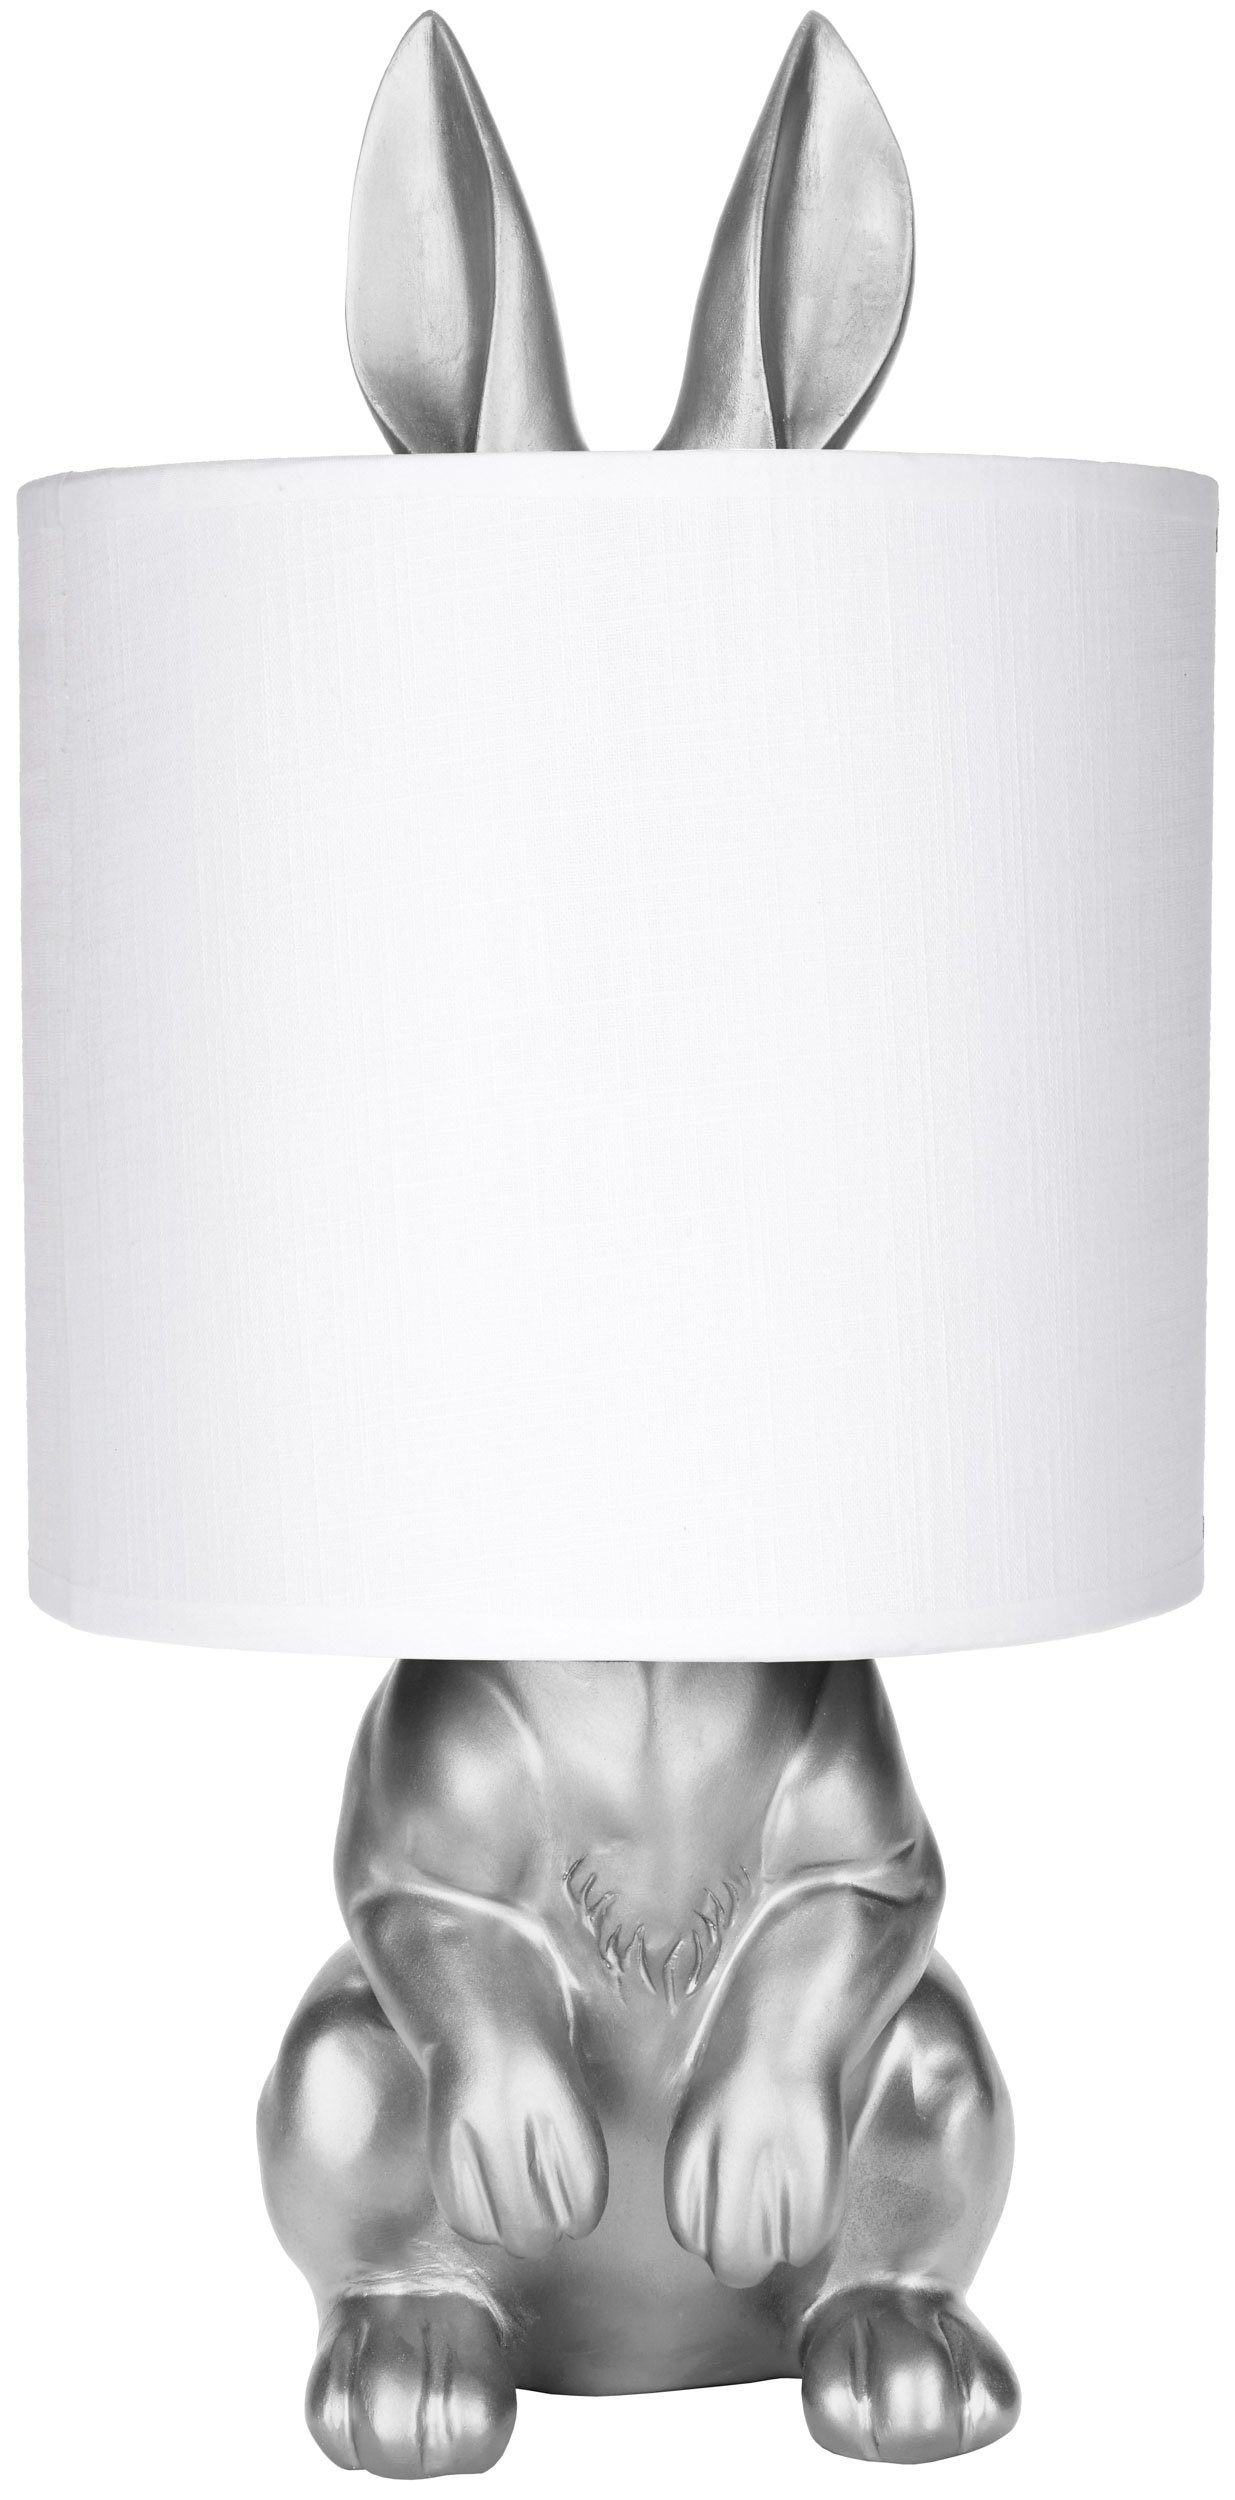 BRUBAKER Nachttischlampe Tischleuchte Hase Gold oder Silber - Tischlampe mit Lampenschirm, ohne Leuchtmittel, Motiv Lampe mit Keramikfuß, Höhe 42 cm